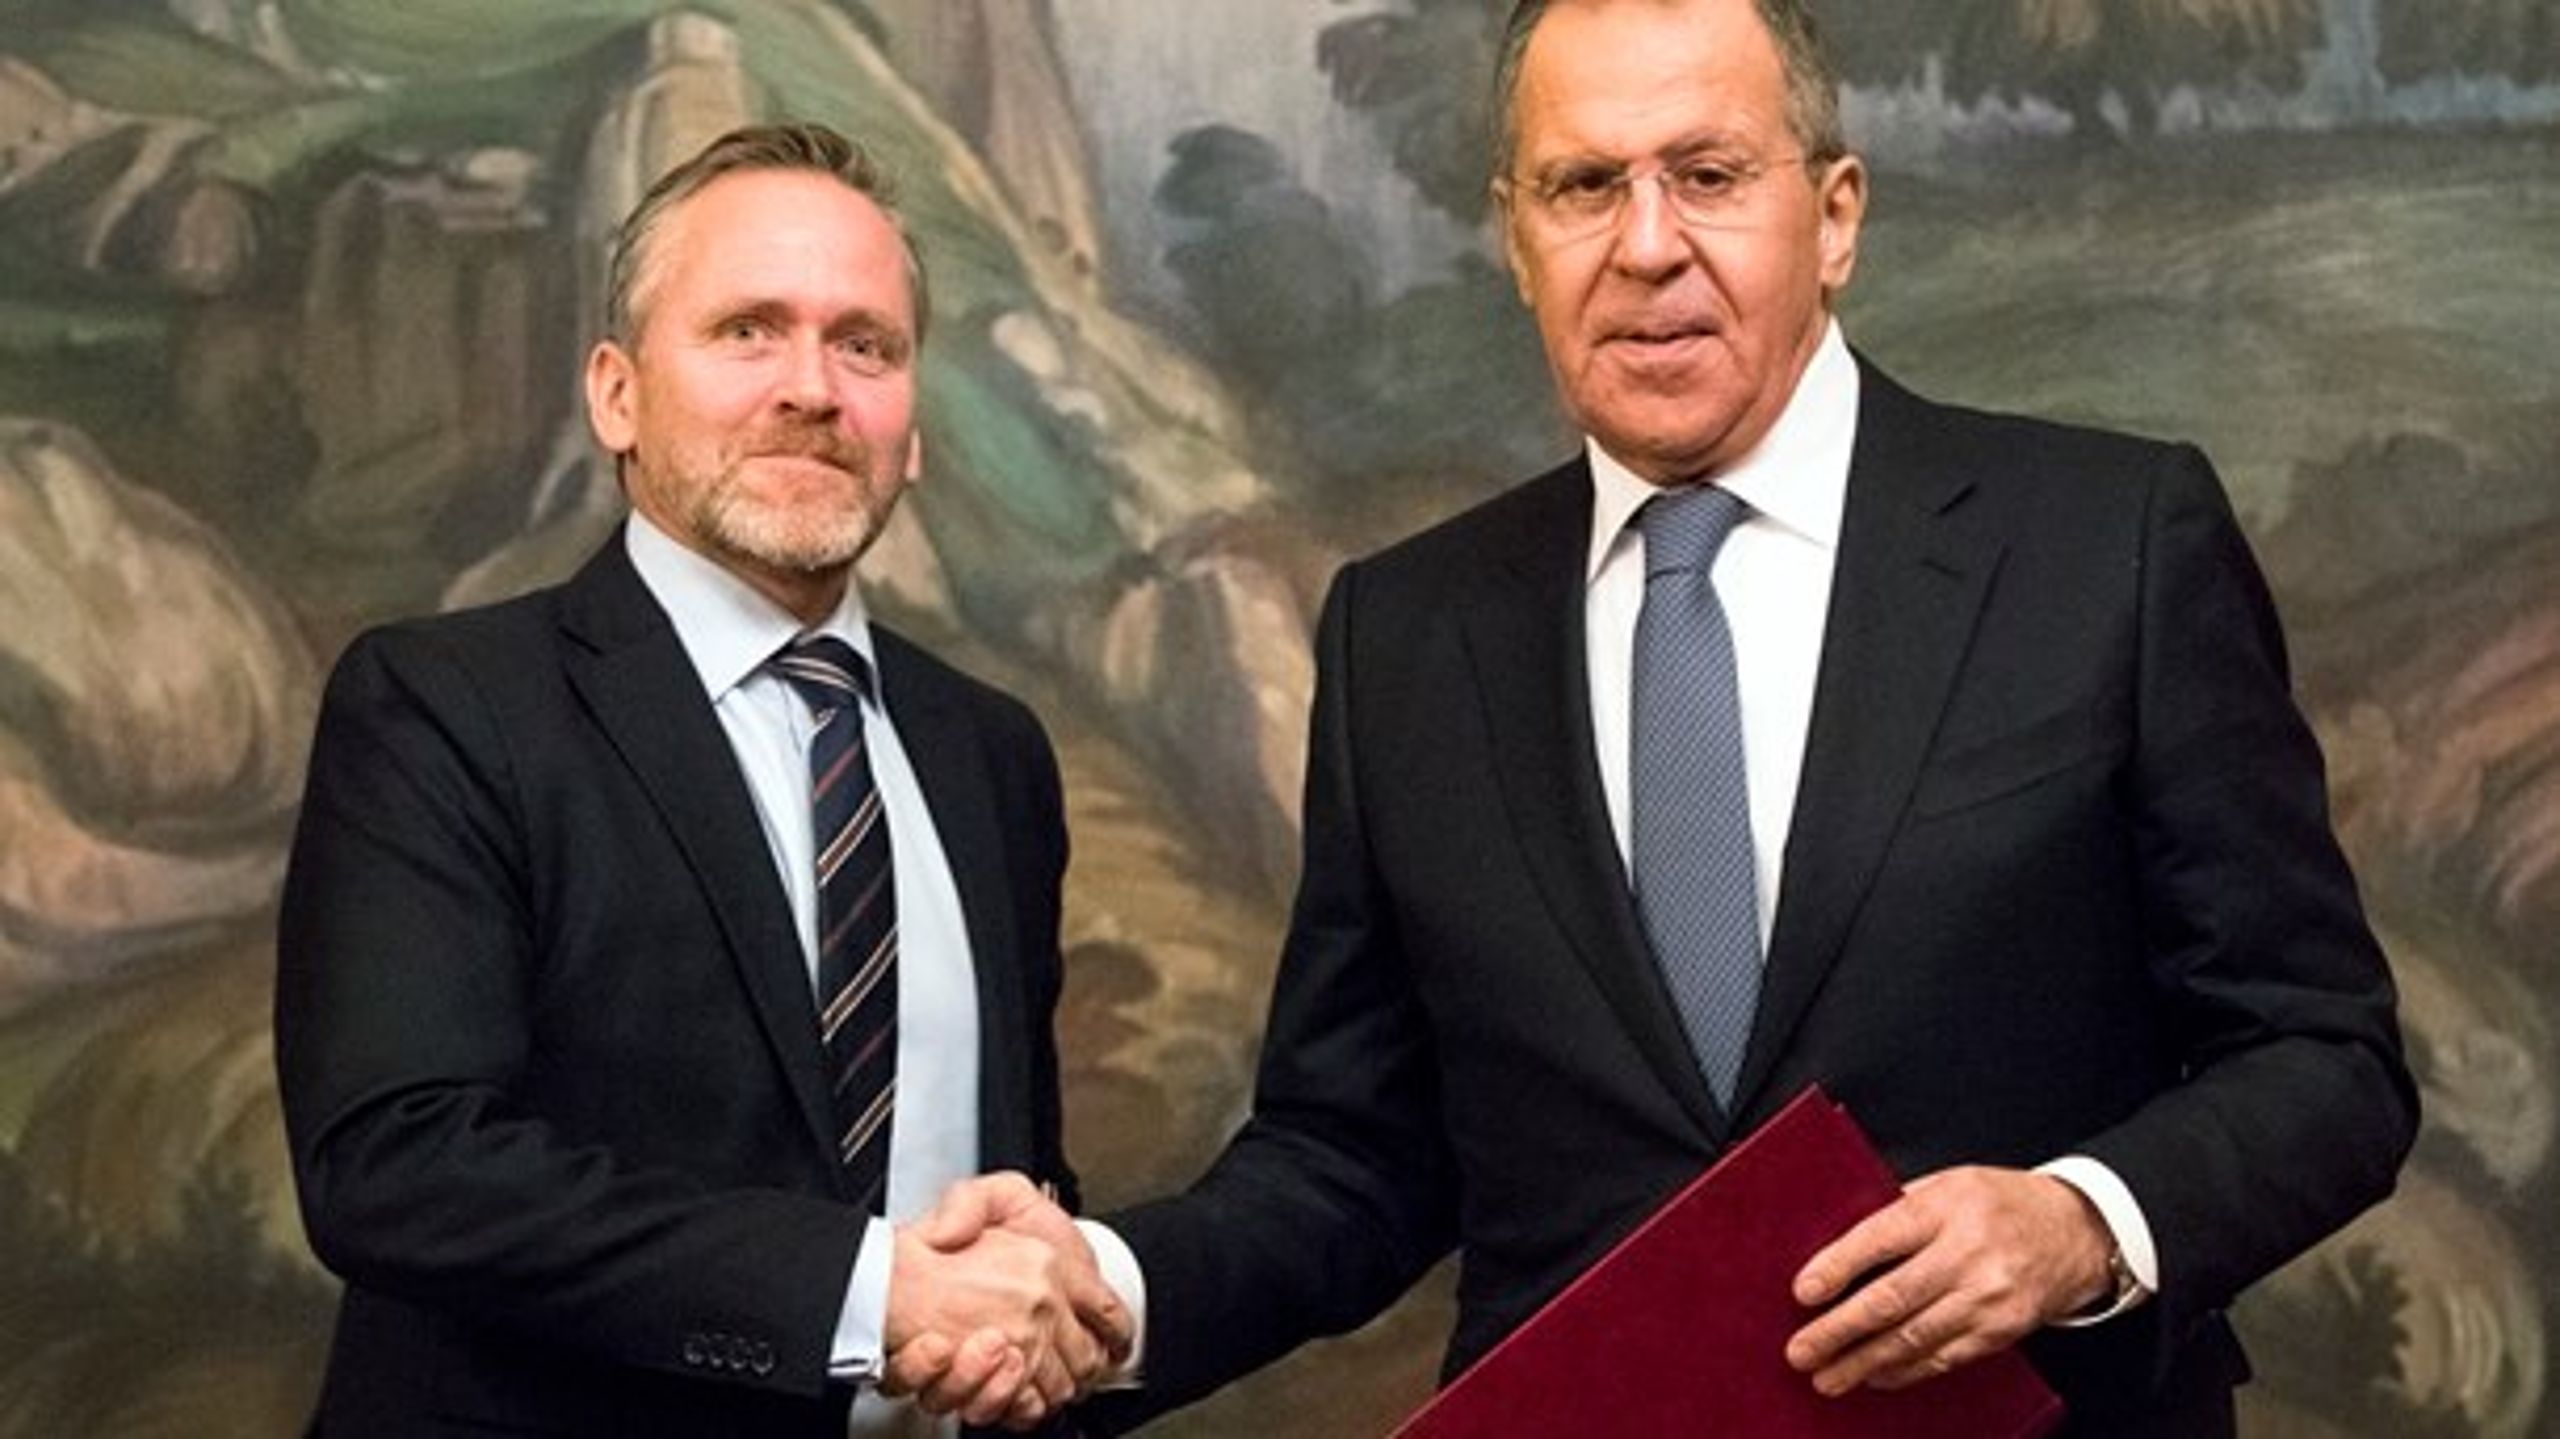 Danmarks udenrigsminister Anders Samuelsen (t.v.) og Ruslands udenrigsminister Sergey Lavrov (t.h.) ved underskriftsceremoni i Moskva i februar 2018.